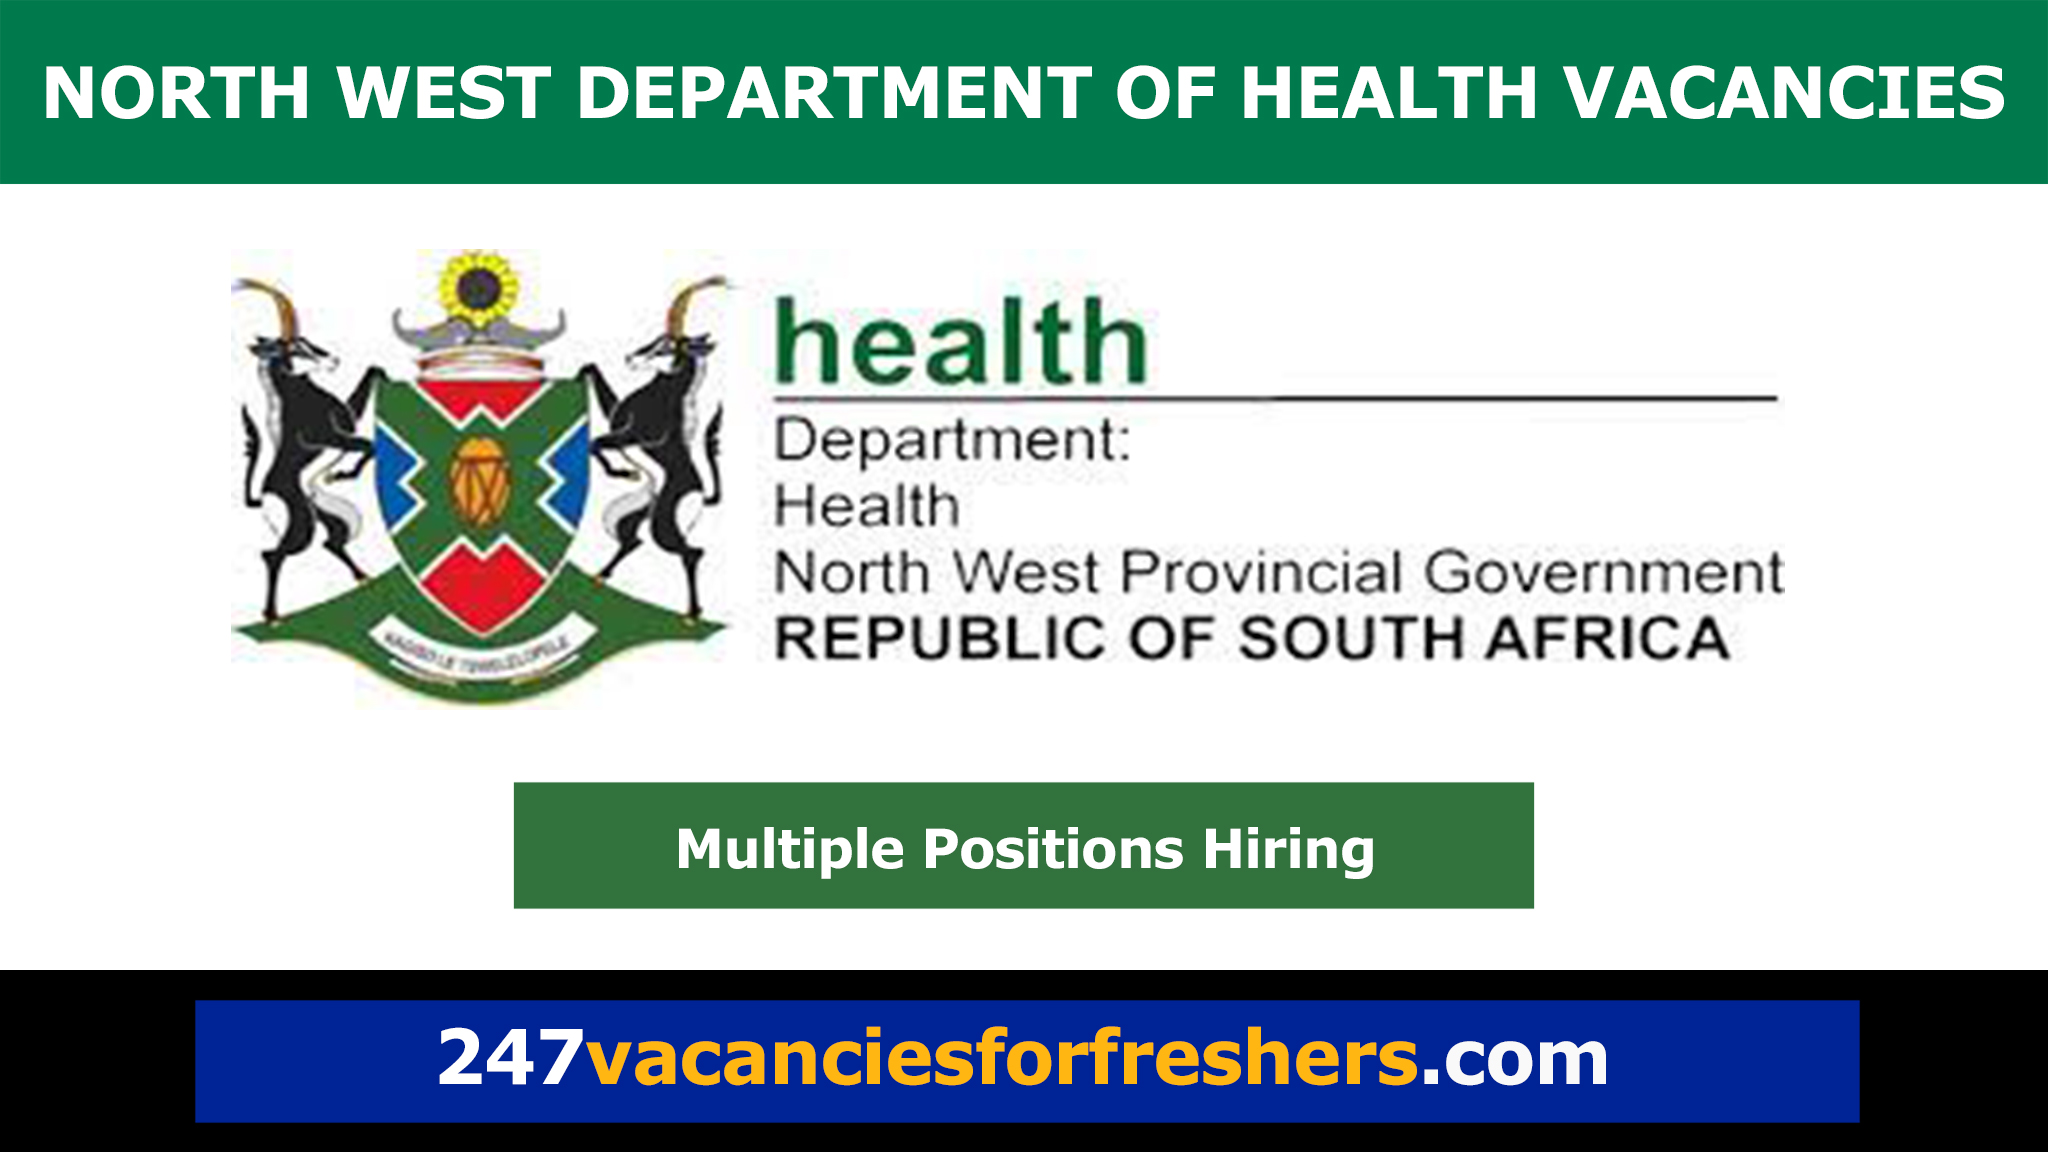 North West Department of Health Vacancies